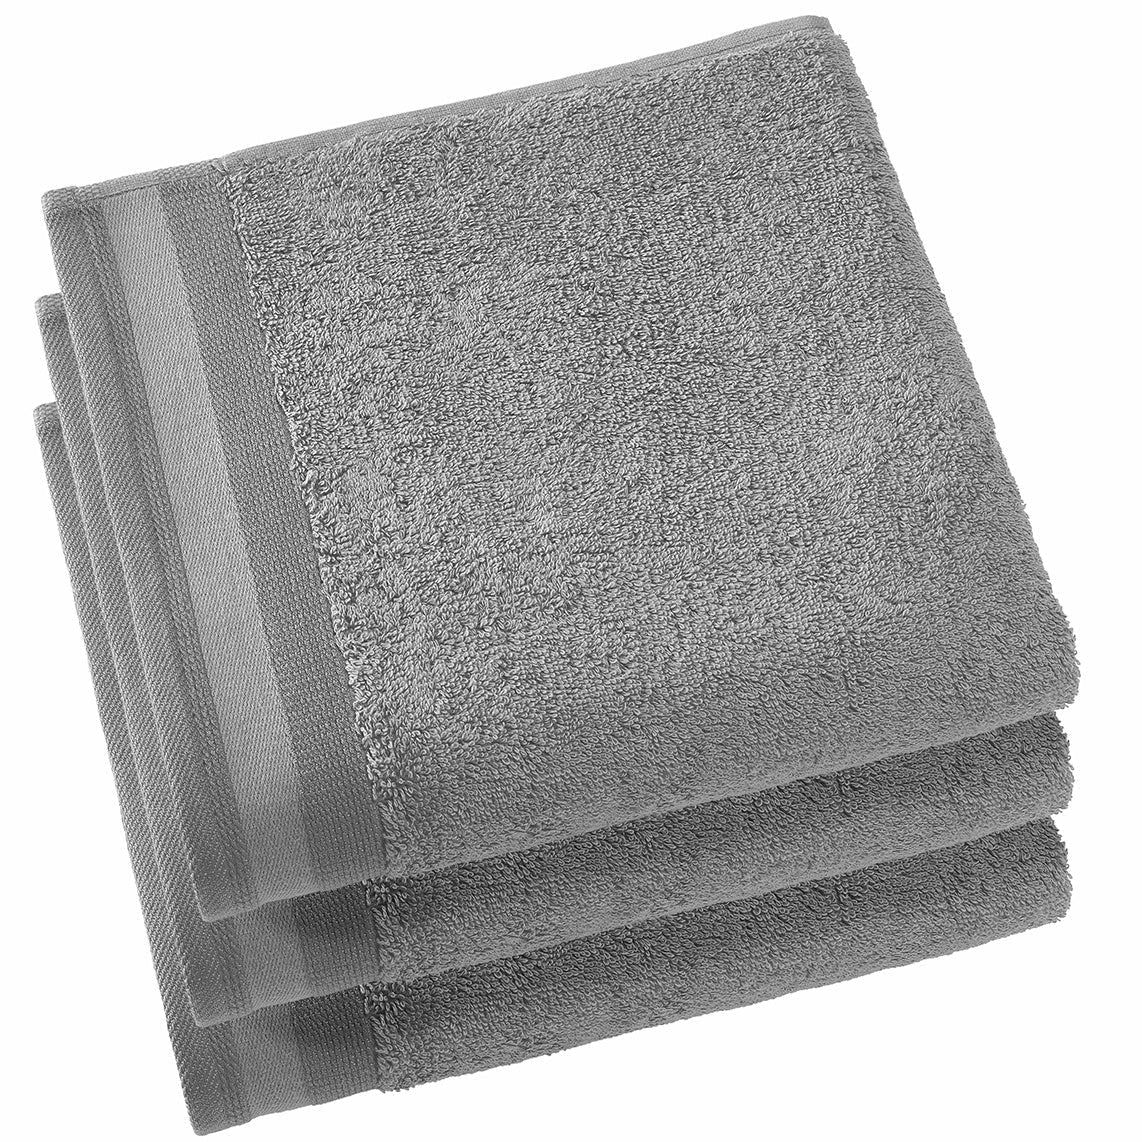 BADLAKEN (1x) - Contessa Steel grey 100 x 150cm Badlaken DE WITTE LIETAER Handdoek 50 x 100cm/3 Antraciet 